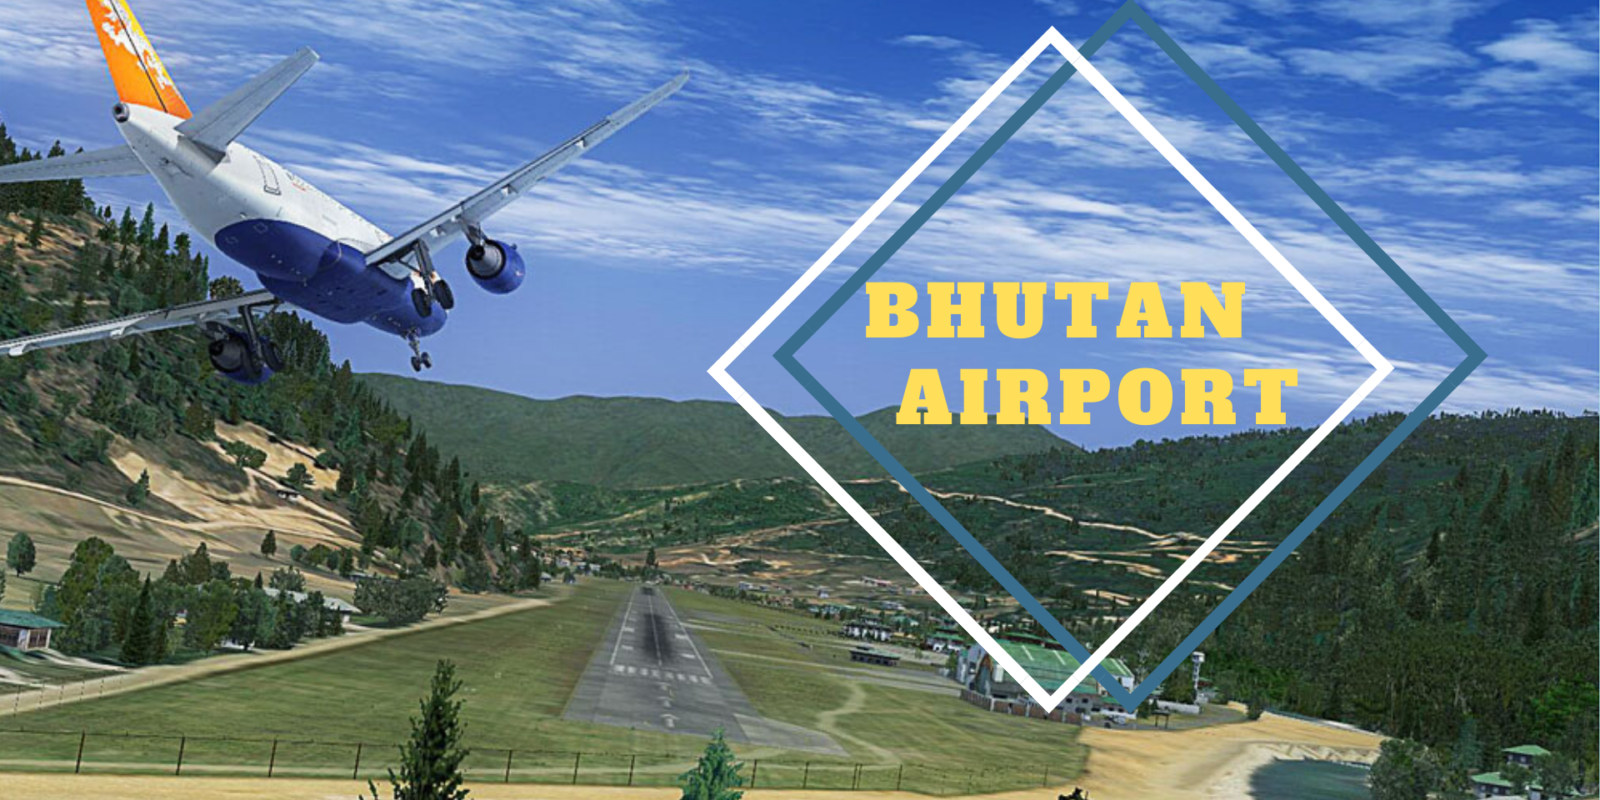 Bhutan airport/Paro airport